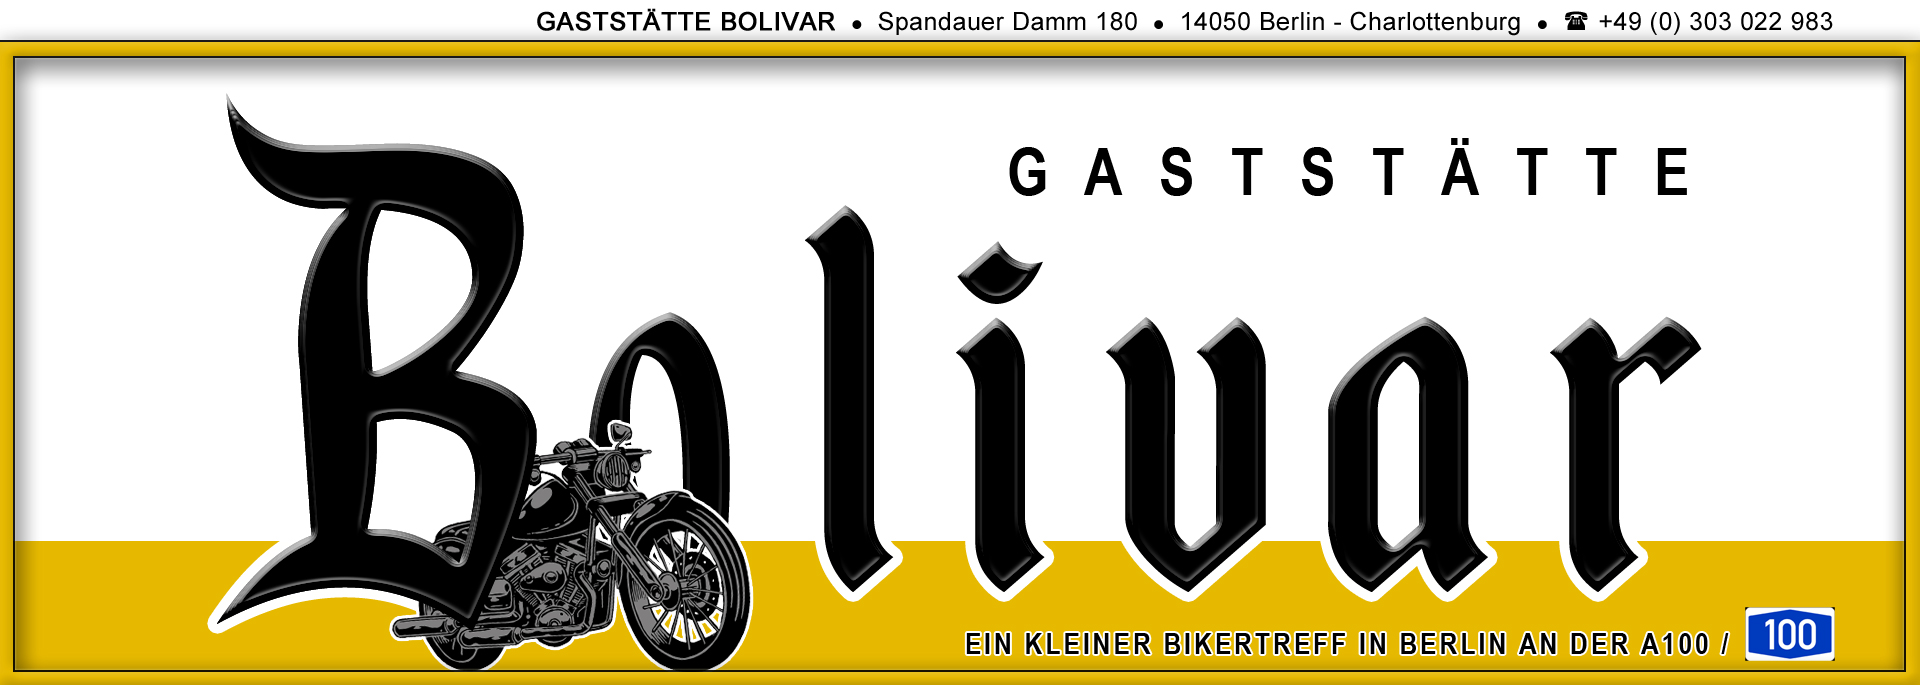 Biker Treff Bolivar in Berlin - Charlottenburg - Für die Bikerin und den Biker vor und oder nach der Ausfahrt der richtige Treffpunkt